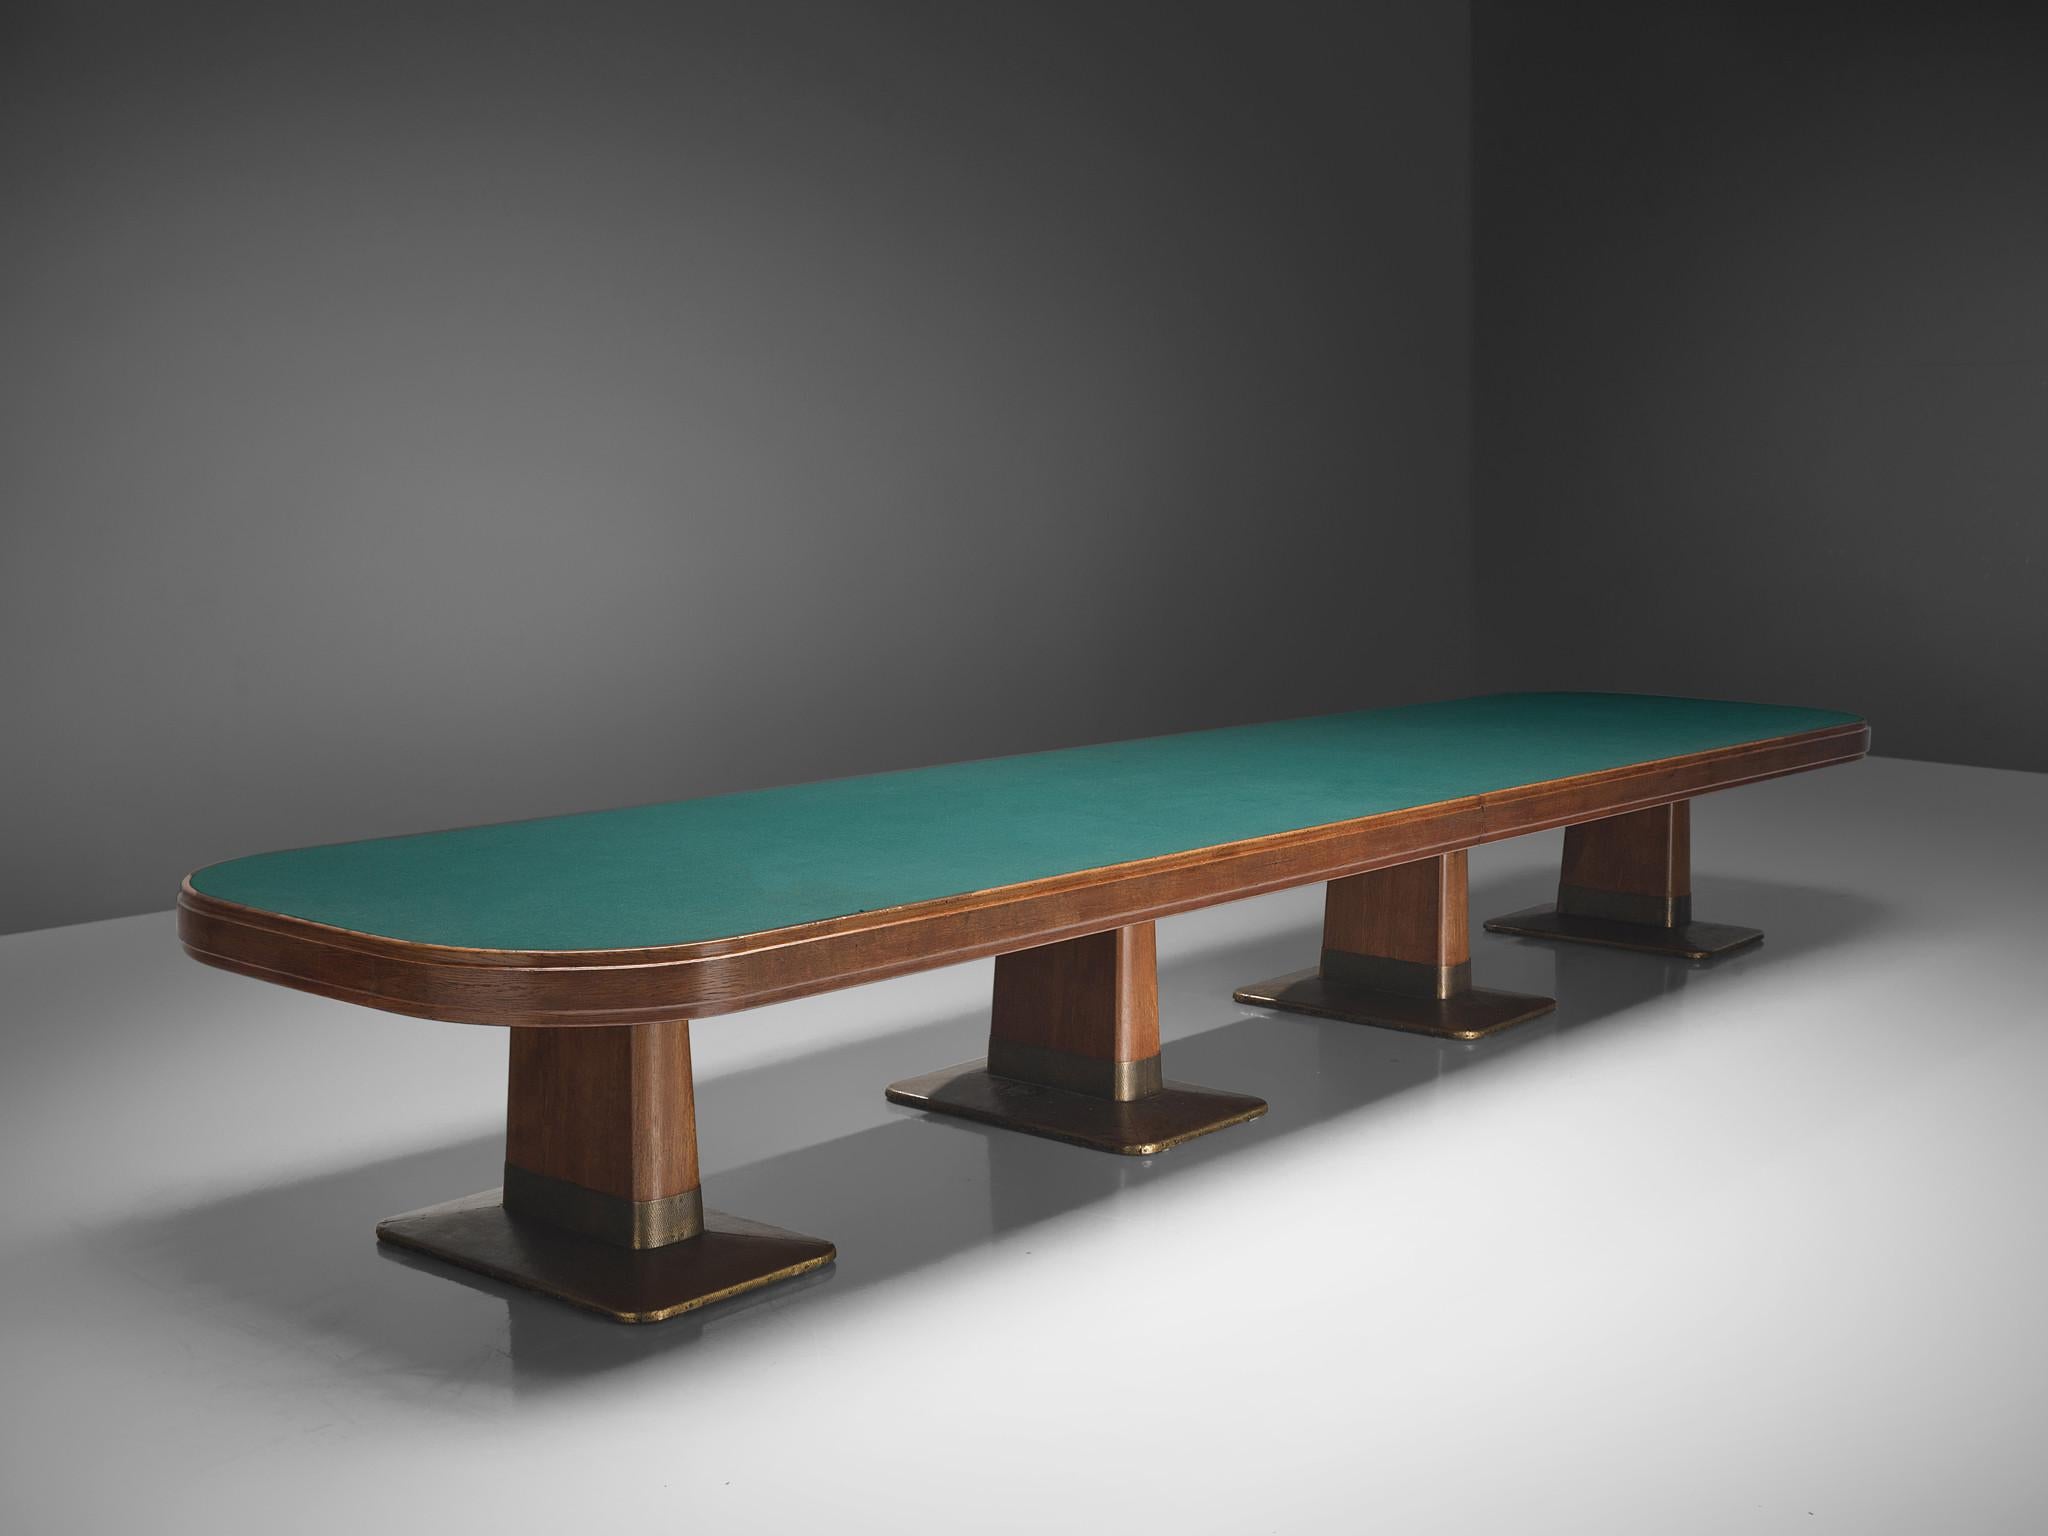 Table de conférence, chêne, laiton, feutre, plexiglas Allemagne, années 1950.

Une table de conférence grandiose composée de deux parties qui, en raison de sa largeur de 19 pieds, pourrait facilement faire office de table de conférence. Le plateau